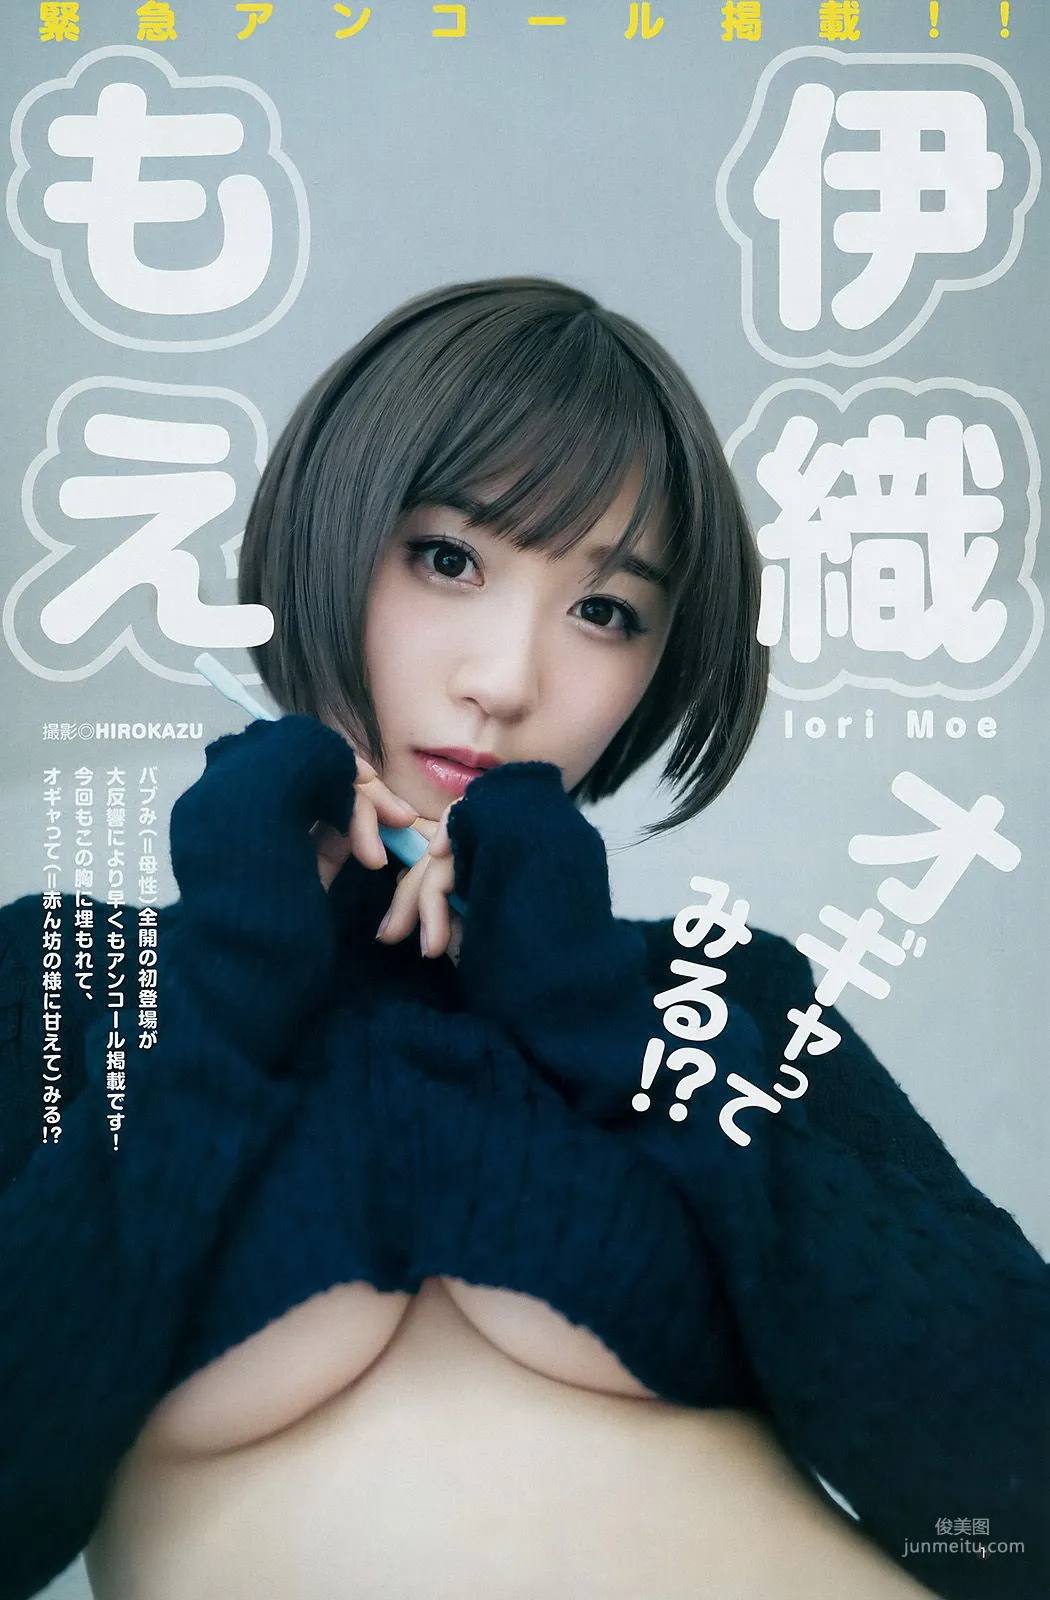 川崎あや つぶら [Weekly Young Jump] 2018年No.13 写真杂志8